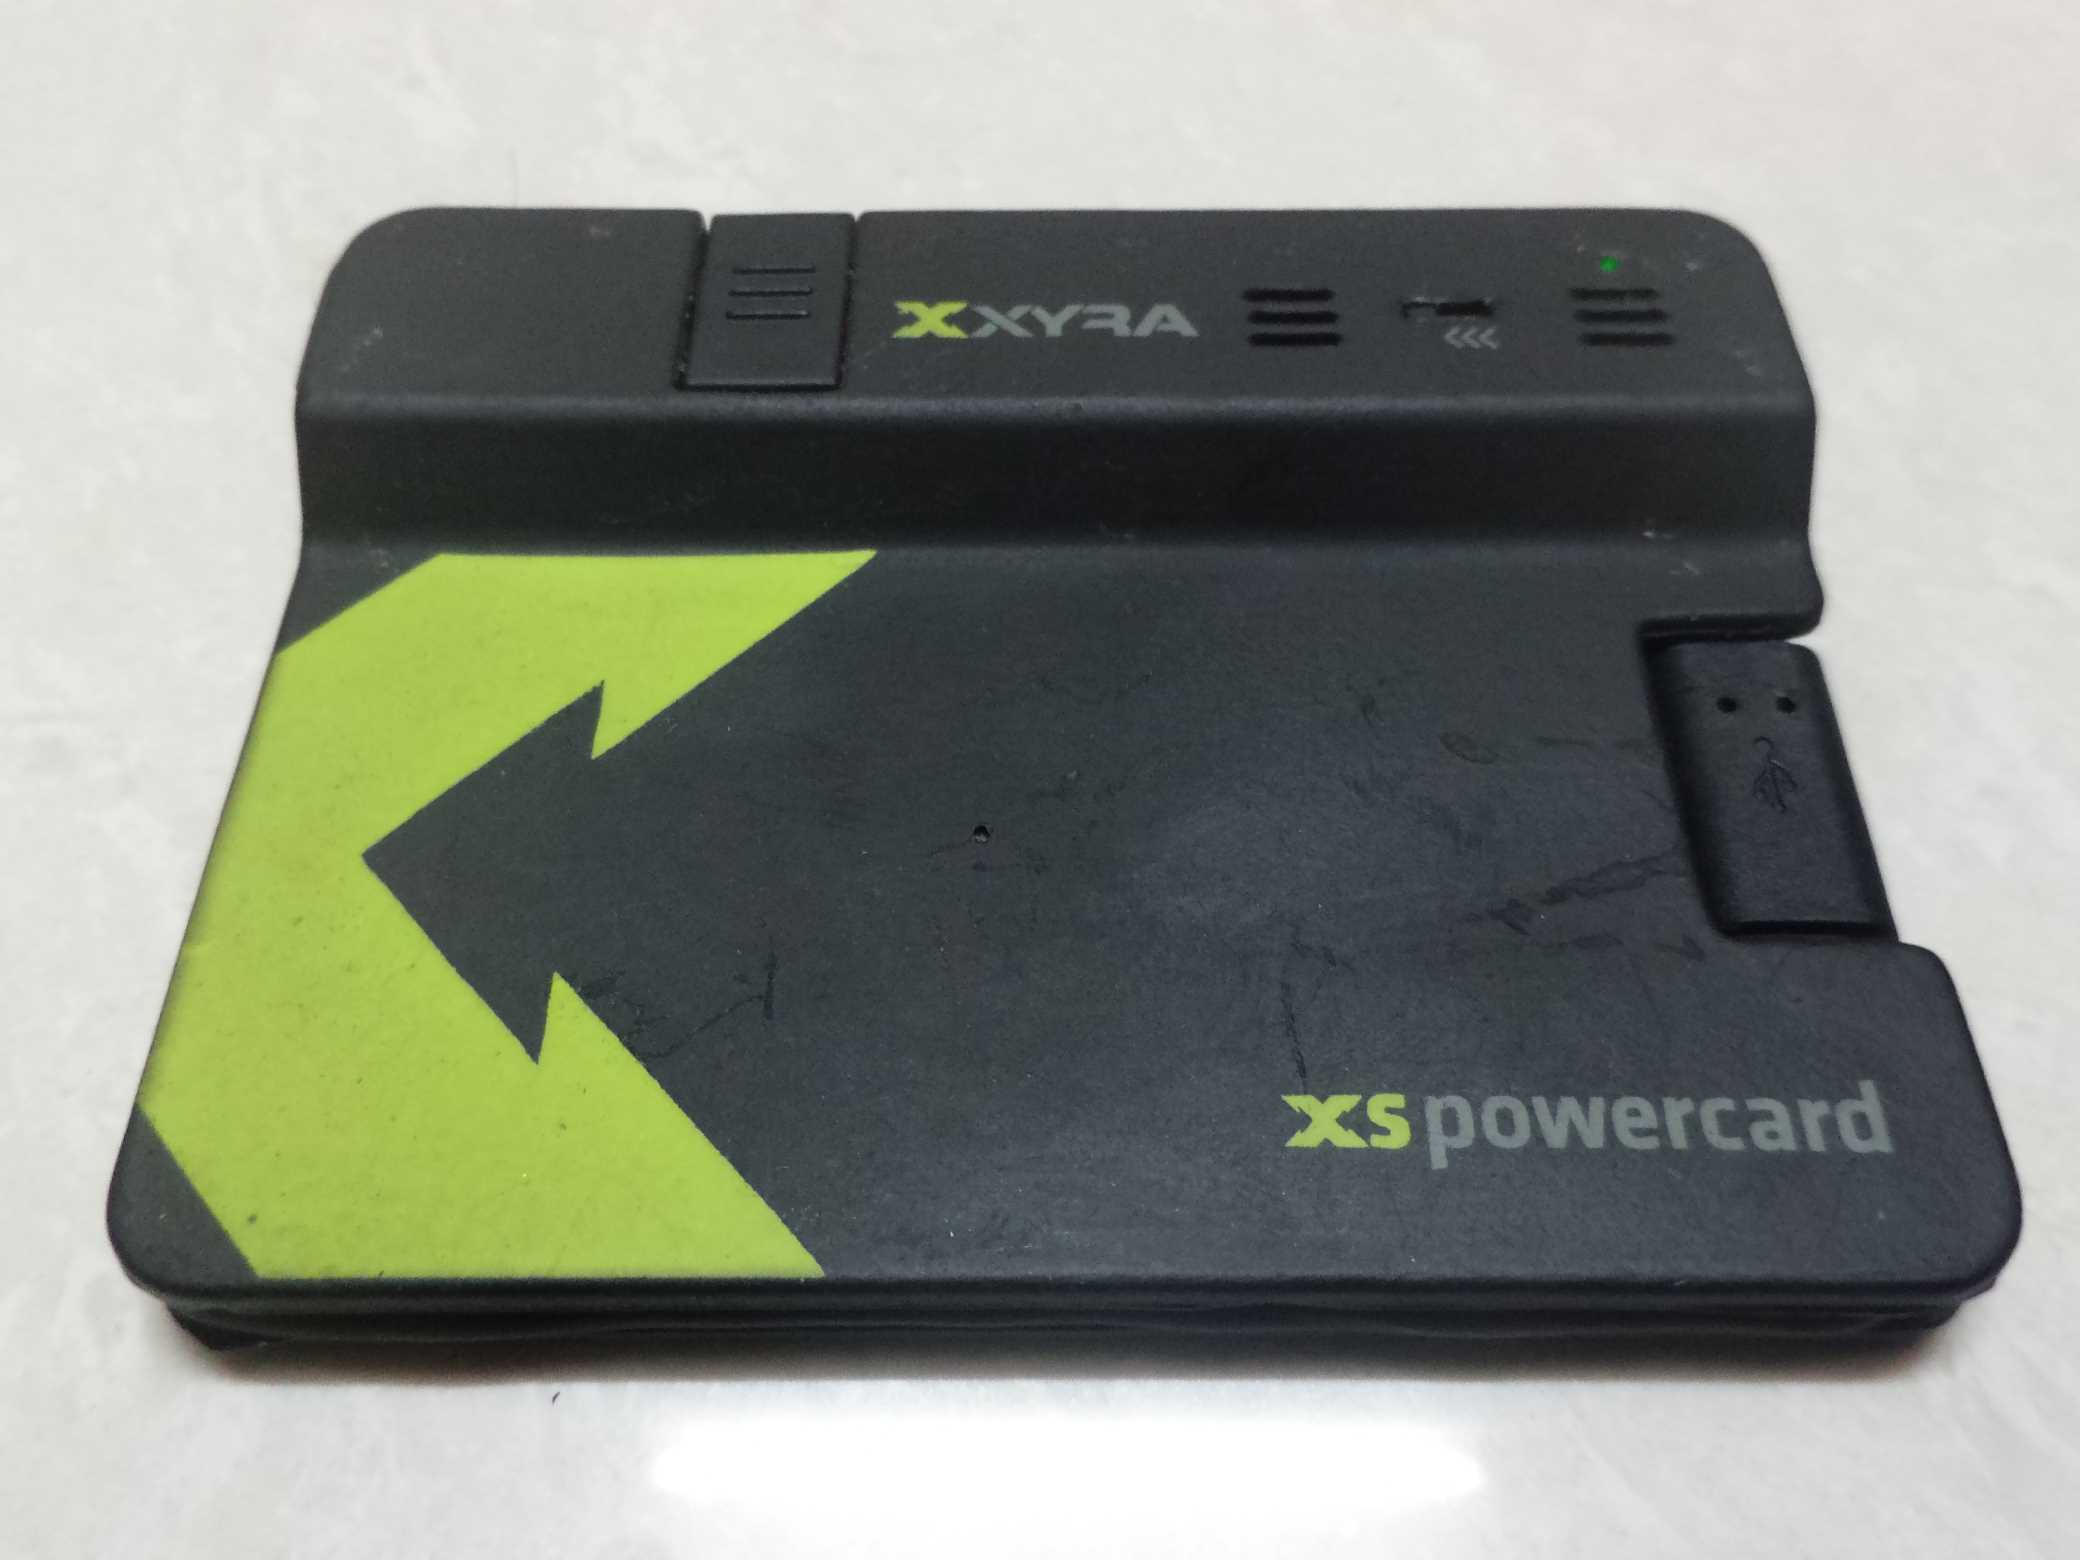 XYRA XS PowerCard review 